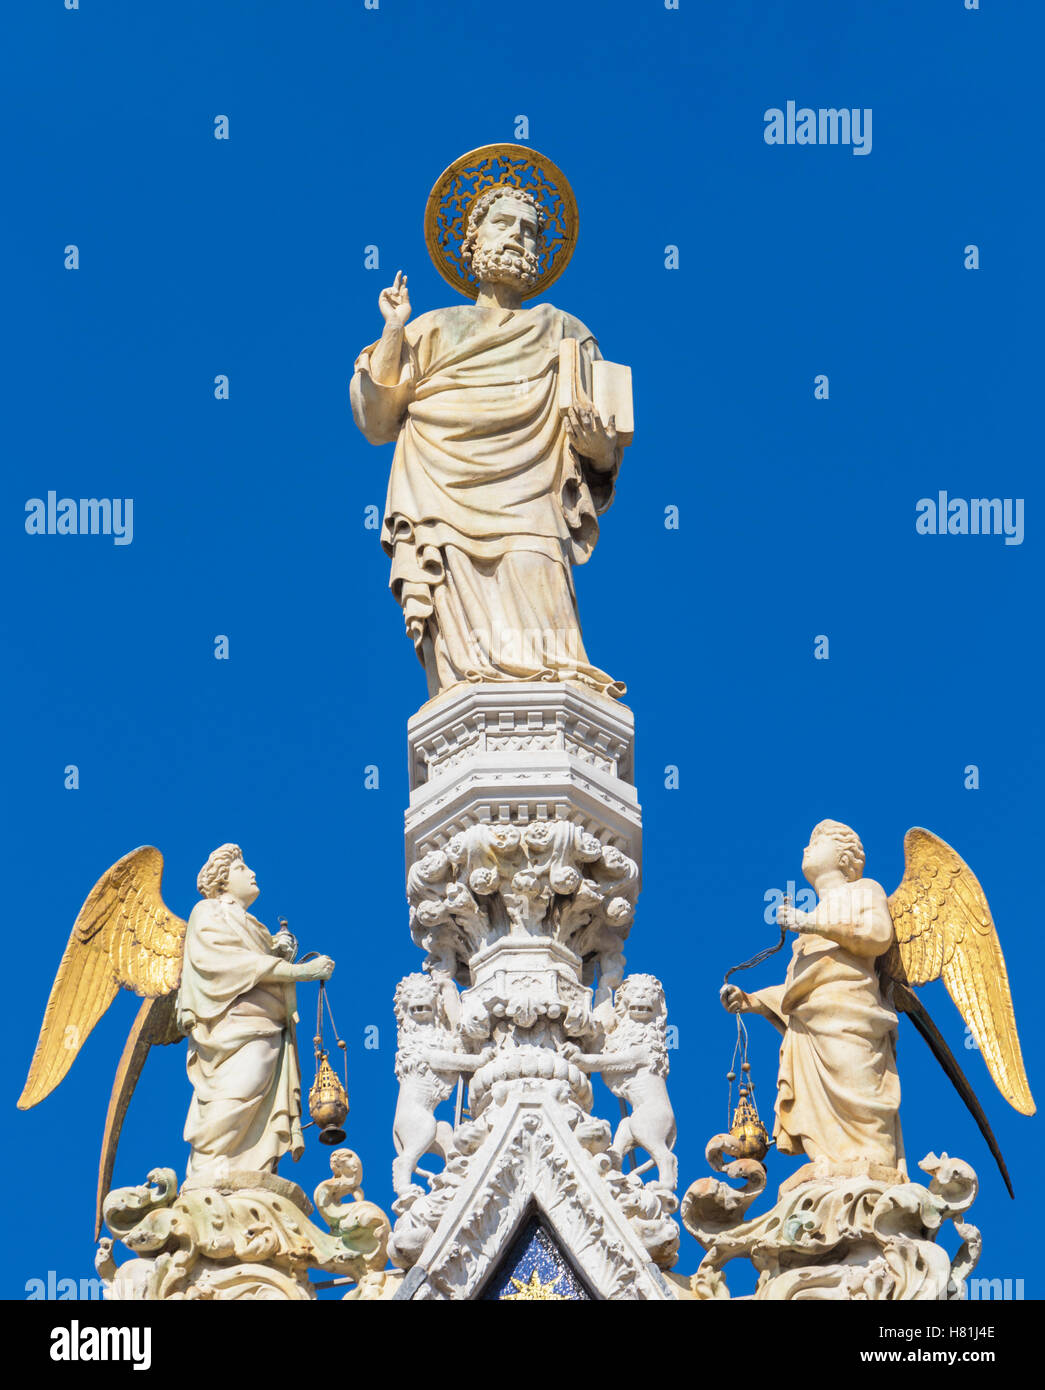 Venise, Venise, Vénétie, province de l'Italie. Statue de Saint Marc, le saint patron de Venise, entouré d'anges. Banque D'Images